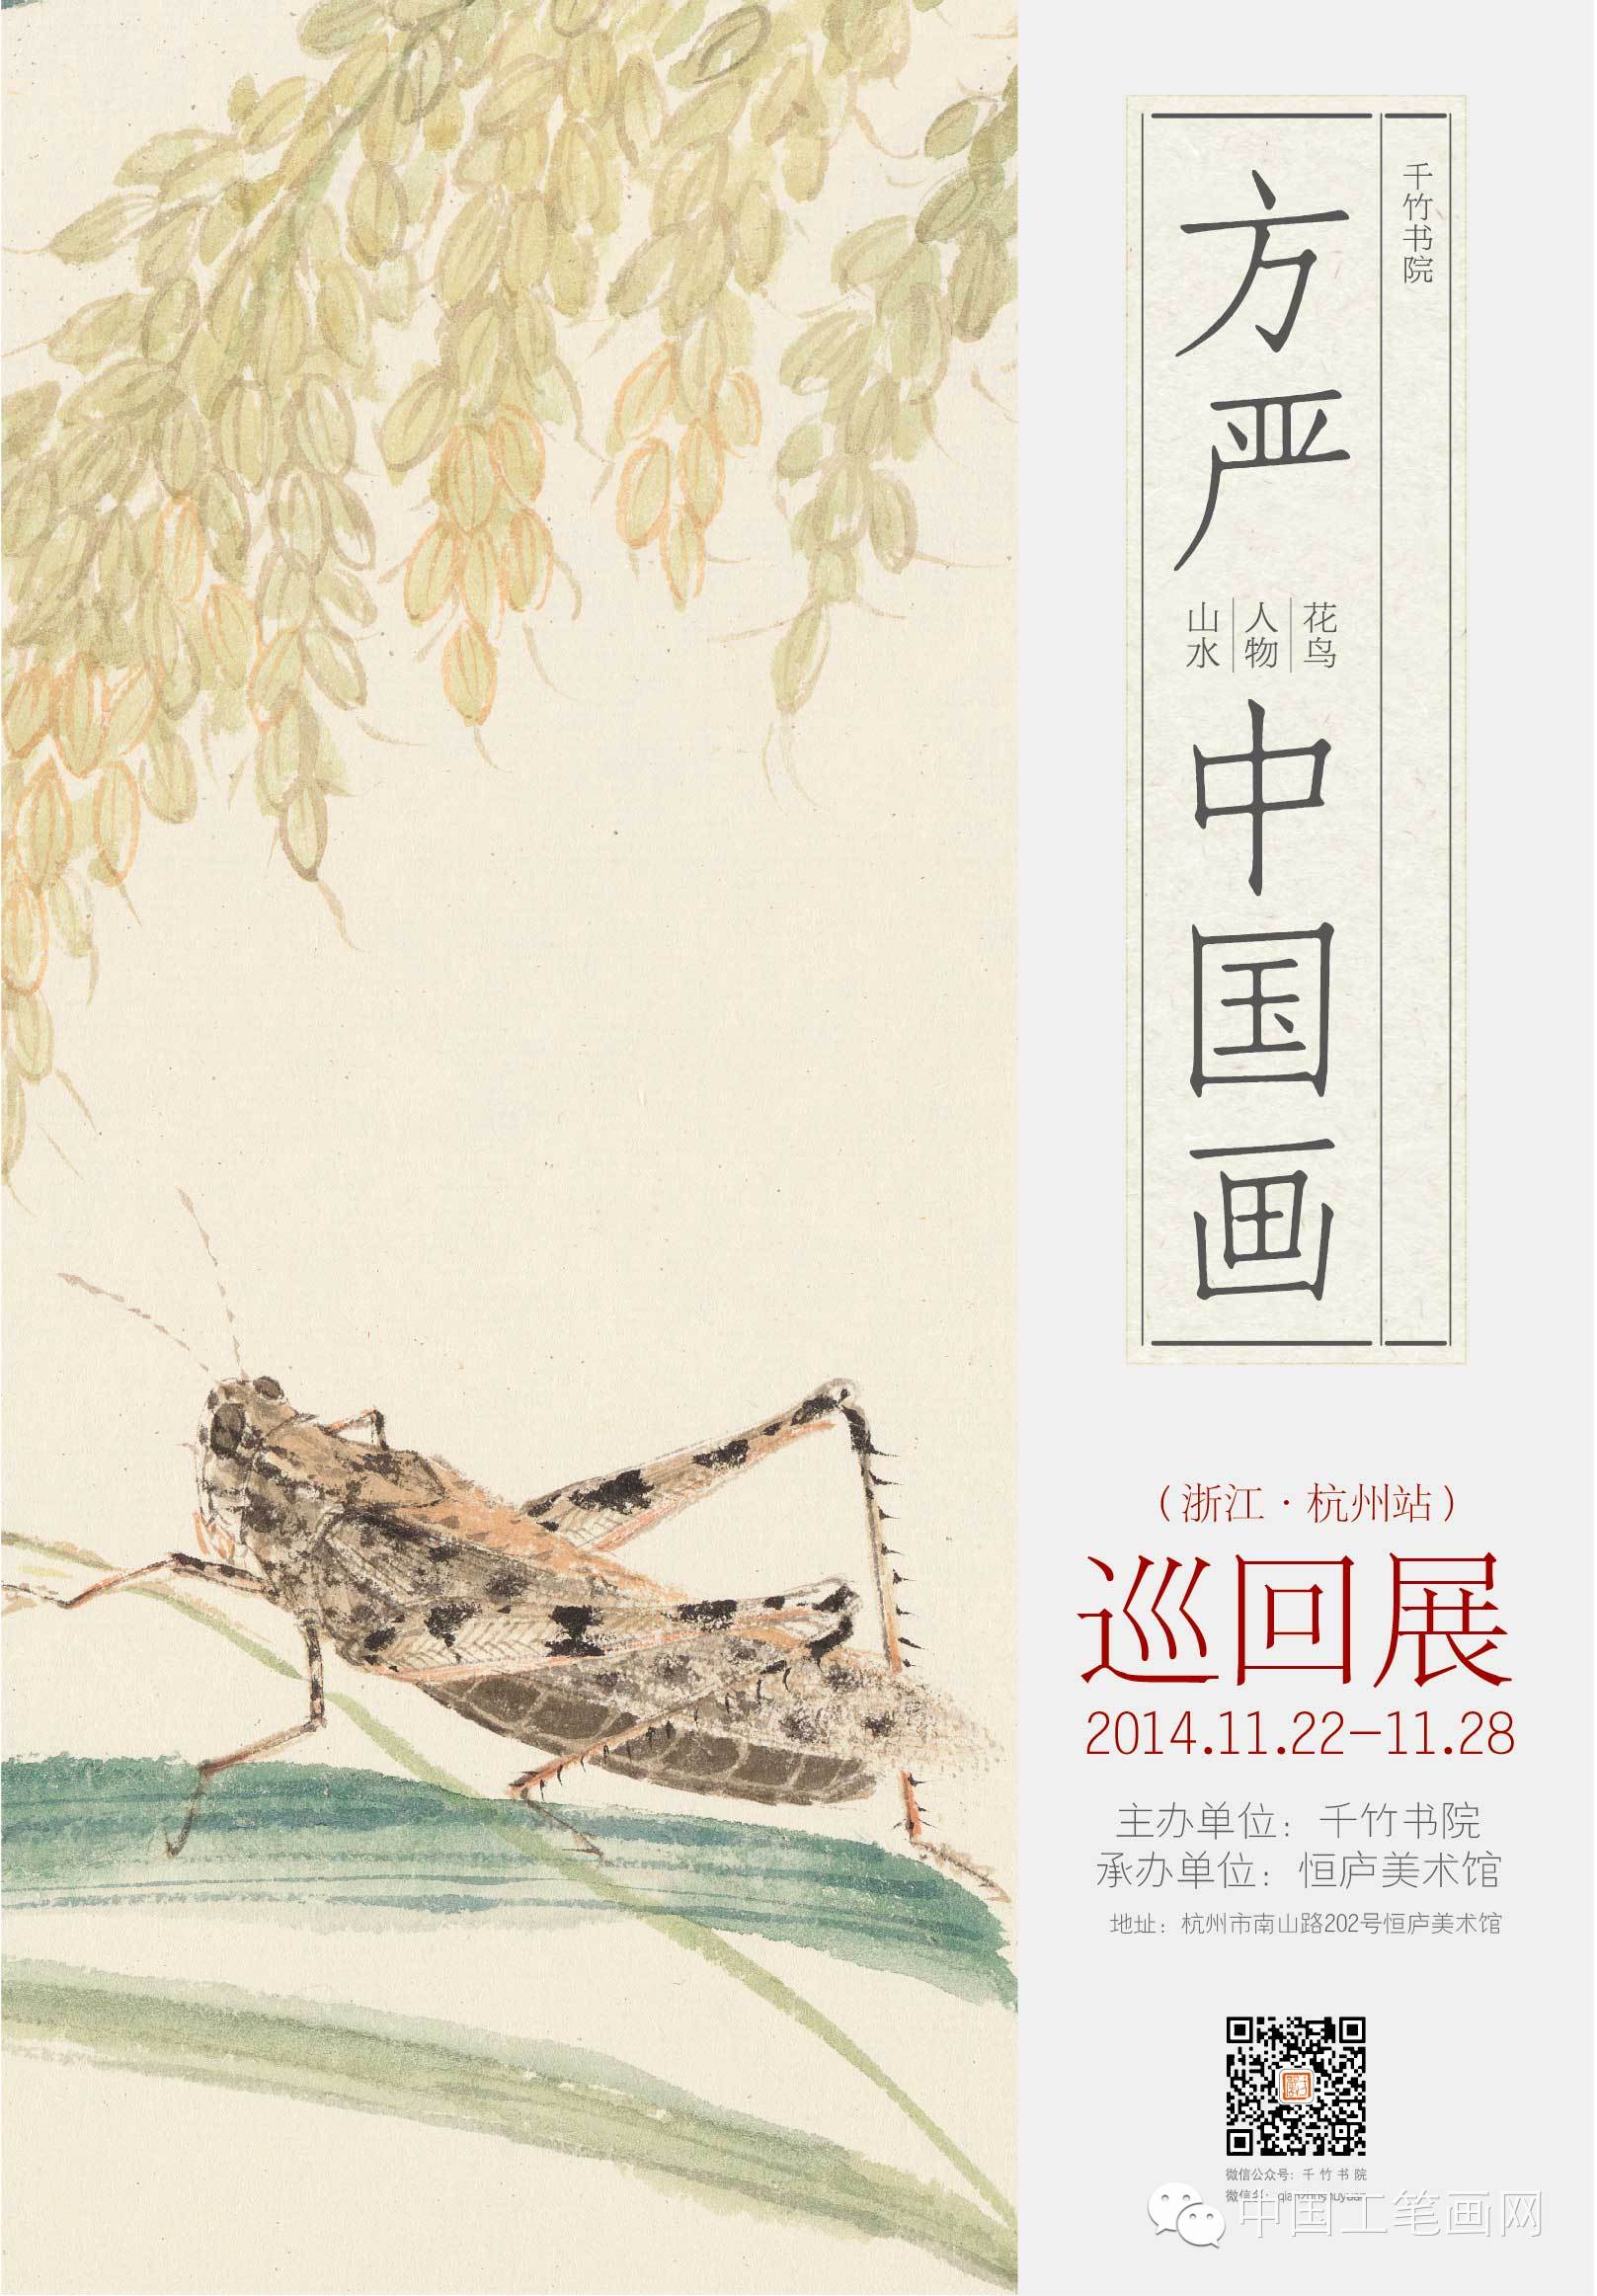 展讯11月22日著名画家方严中国画作品展将亮相杭州恒庐美术馆